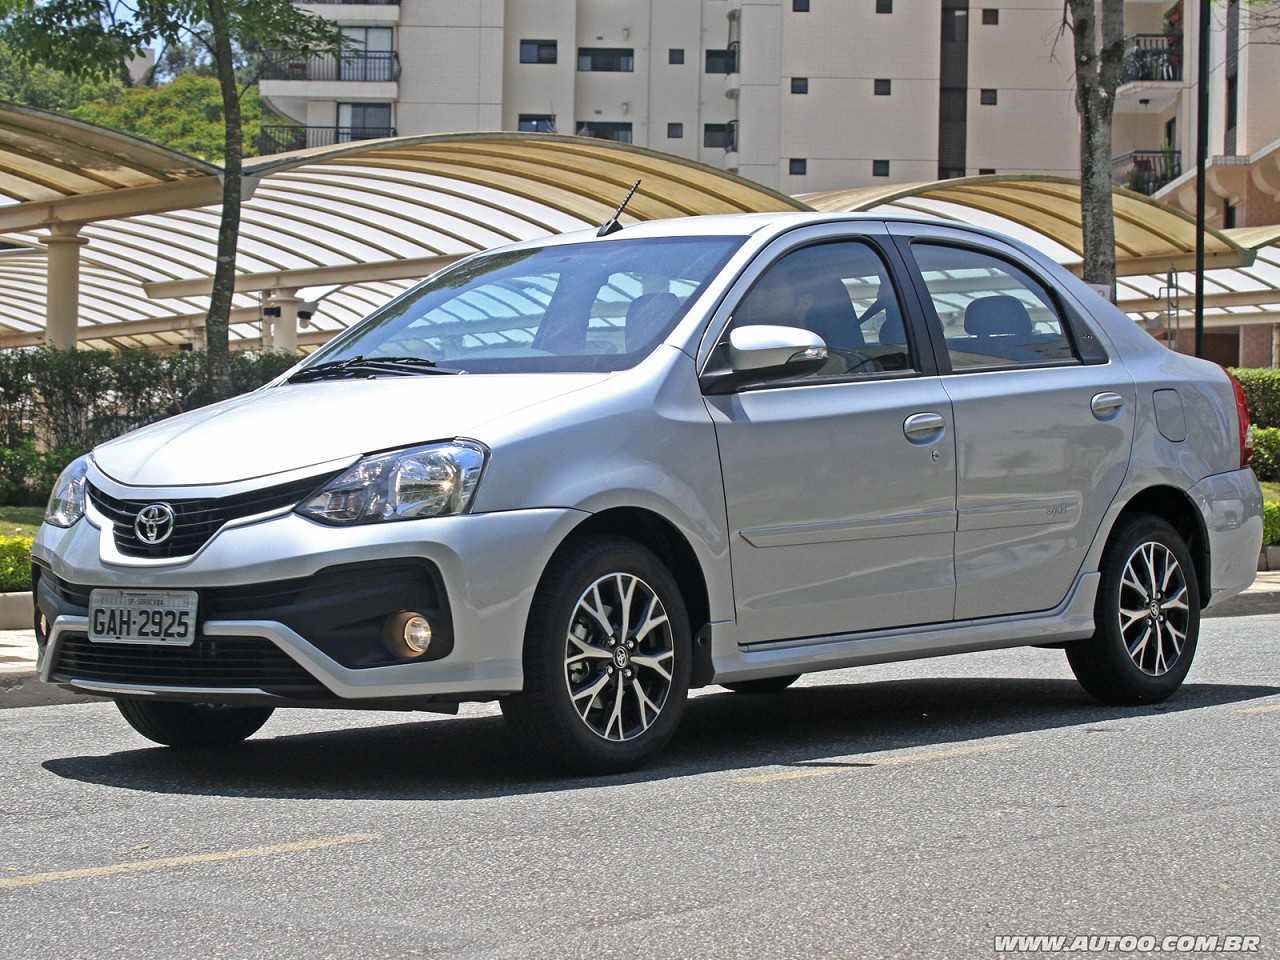 Hyundai HB20S Premium, Toyota Etios Sedã Platinum ou um Chevrolet Cobalt Elite?